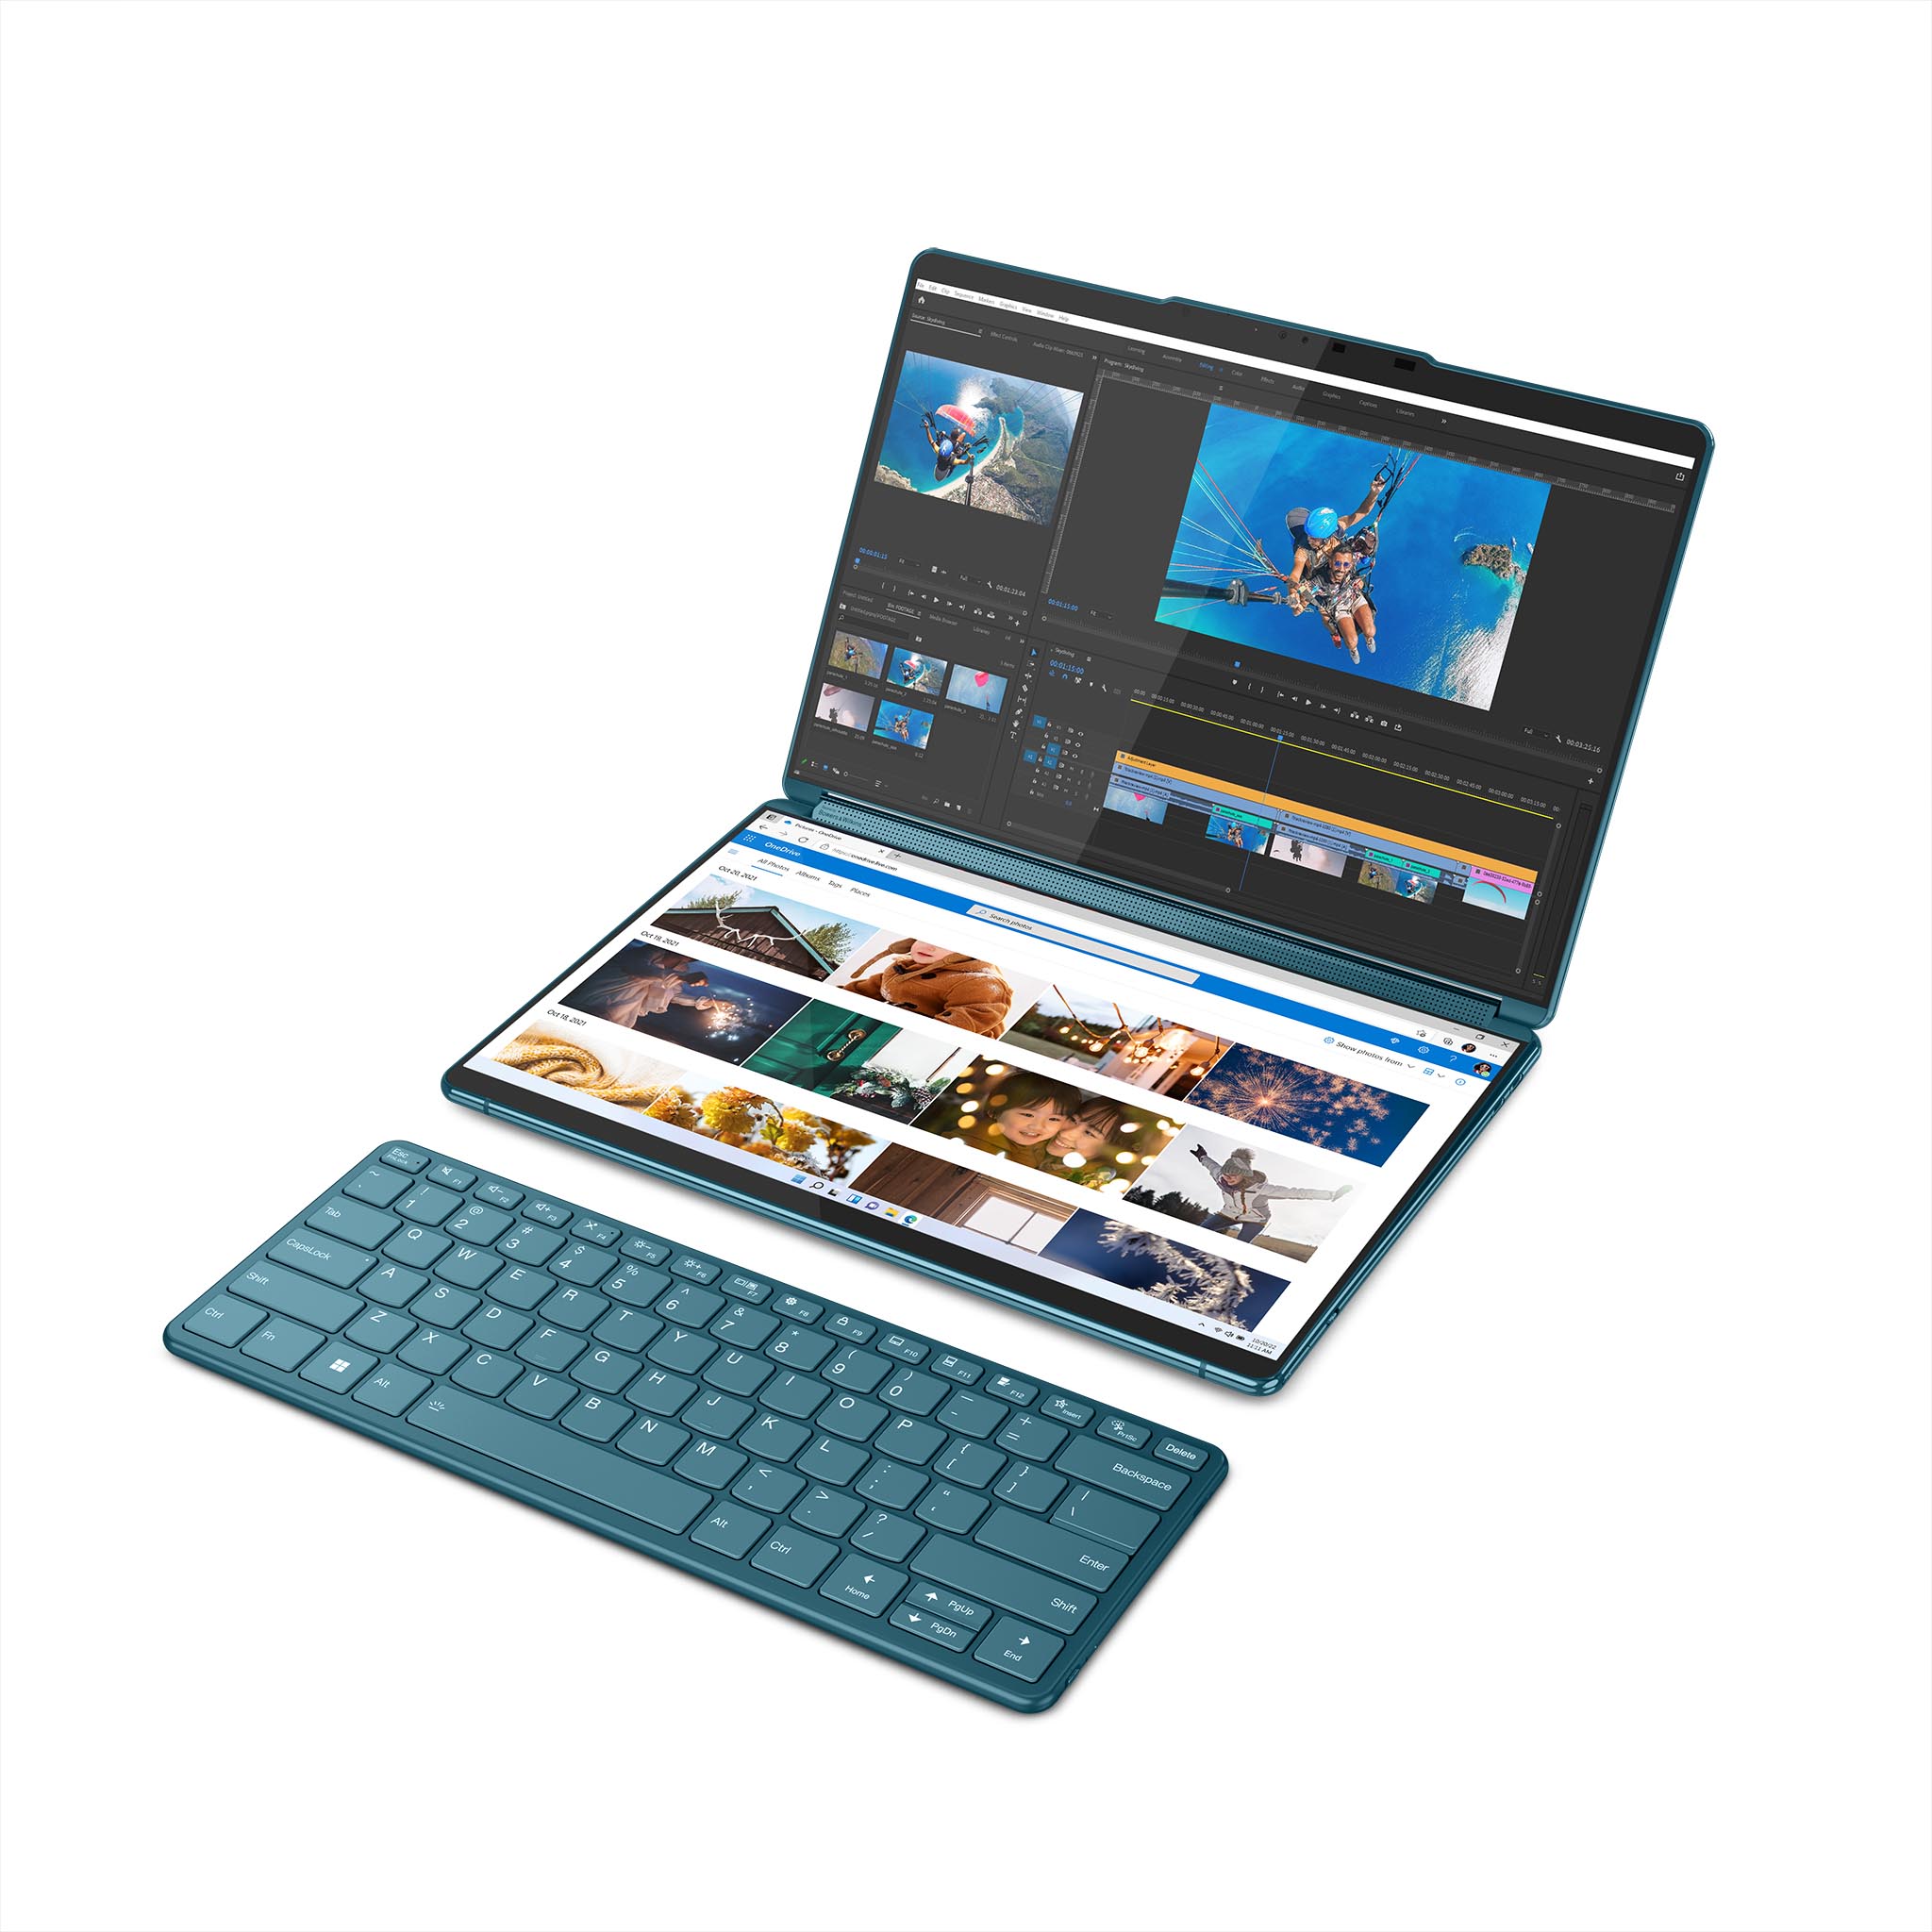 Lenovo Yogabook 9i with keyboard